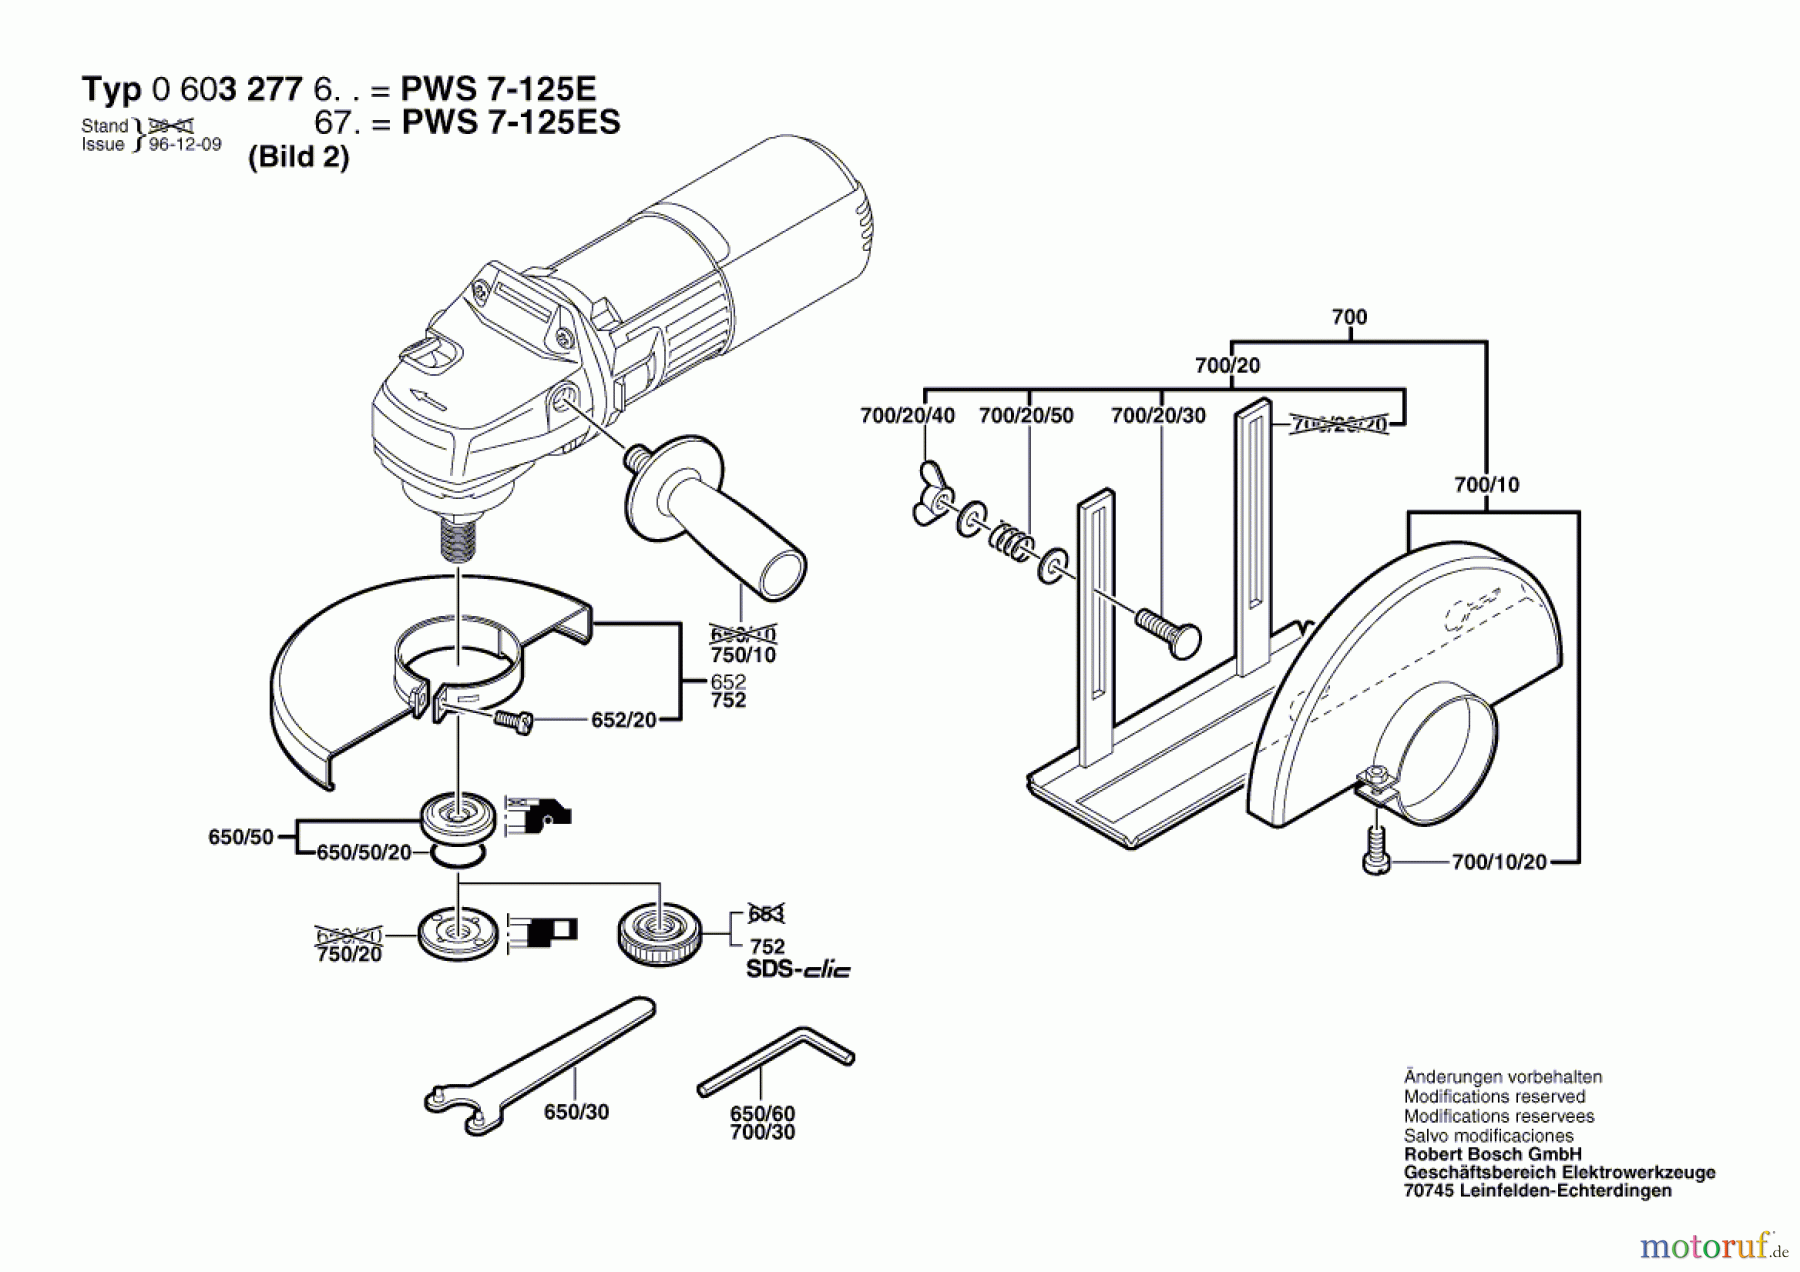  Bosch Werkzeug Winkelschleifer PWS 7-125 E Seite 2